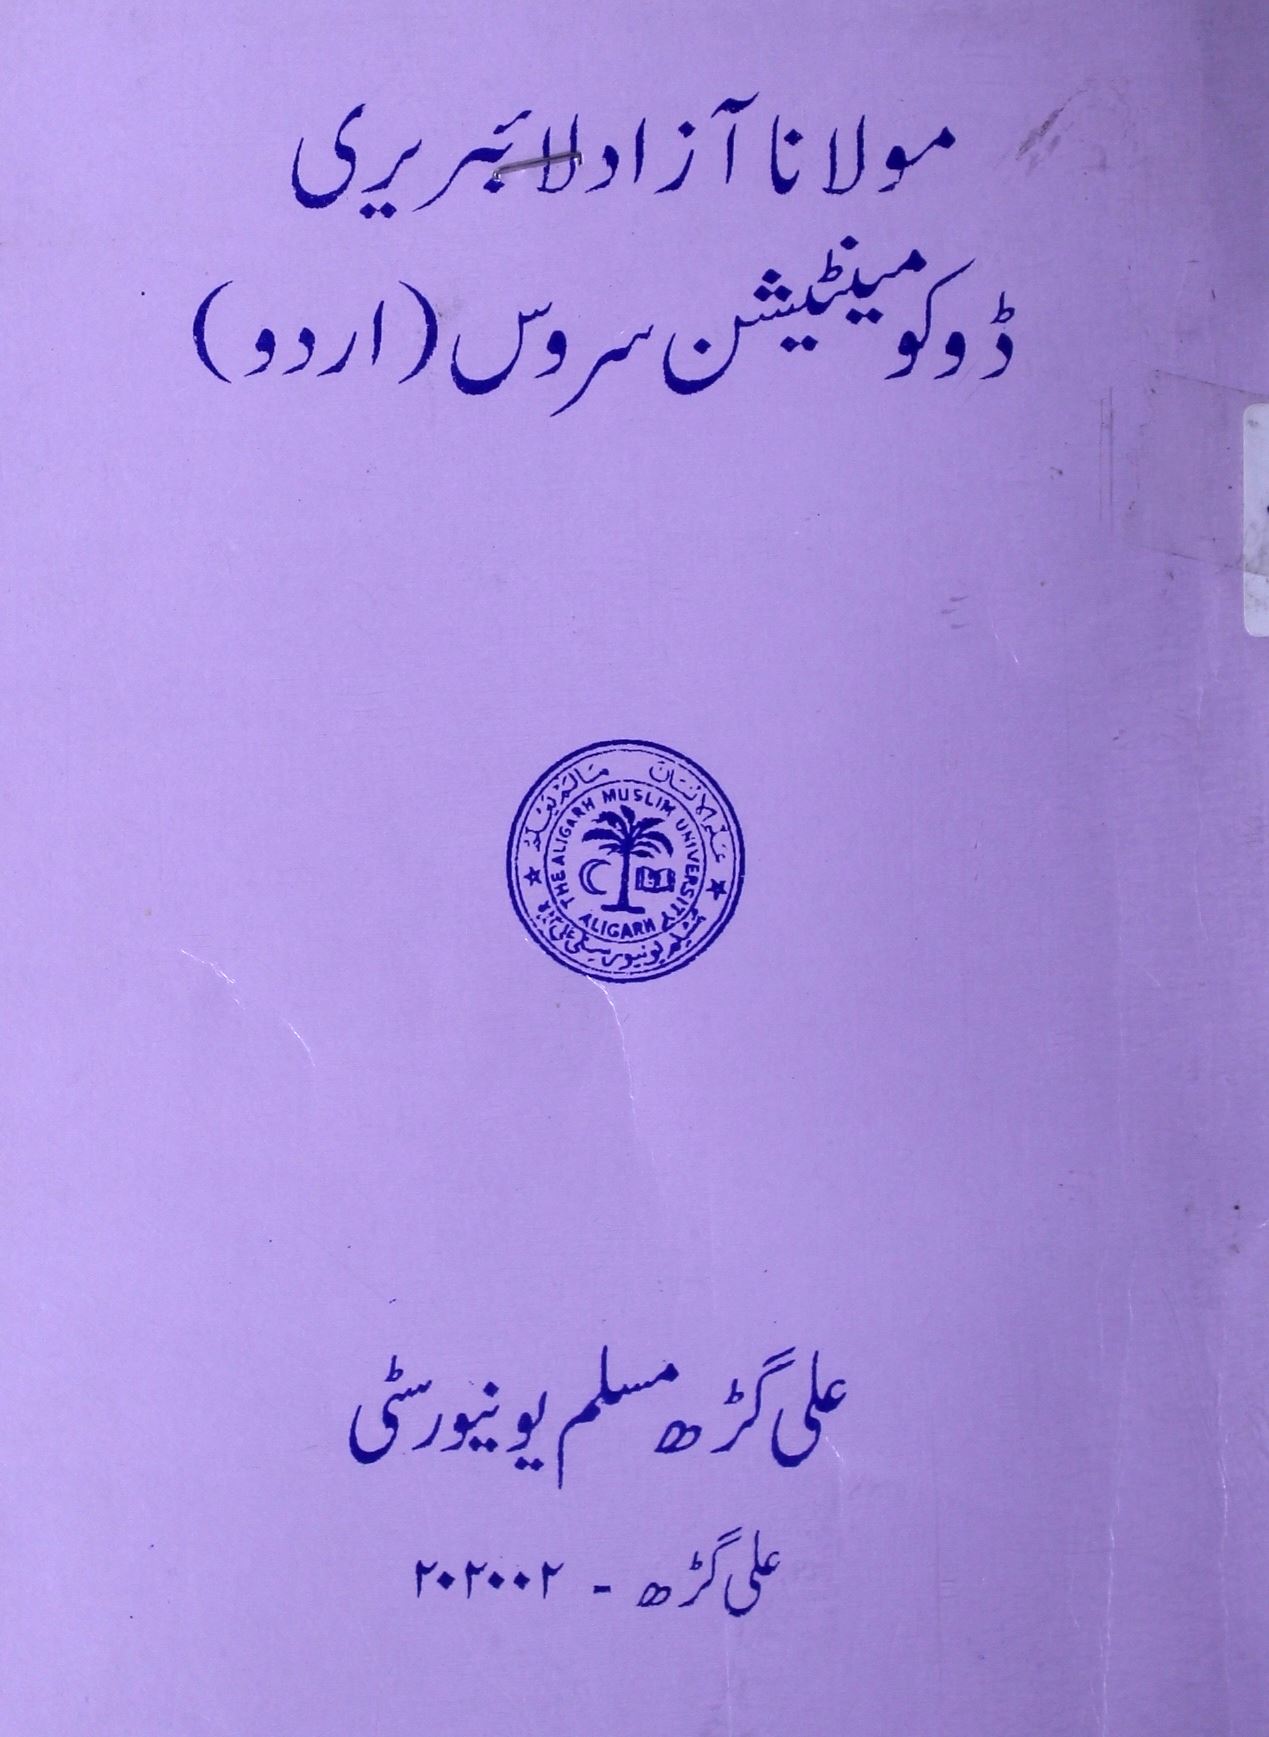 مولانا آزاد لائبریری ڈوکومینٹیشن سروس